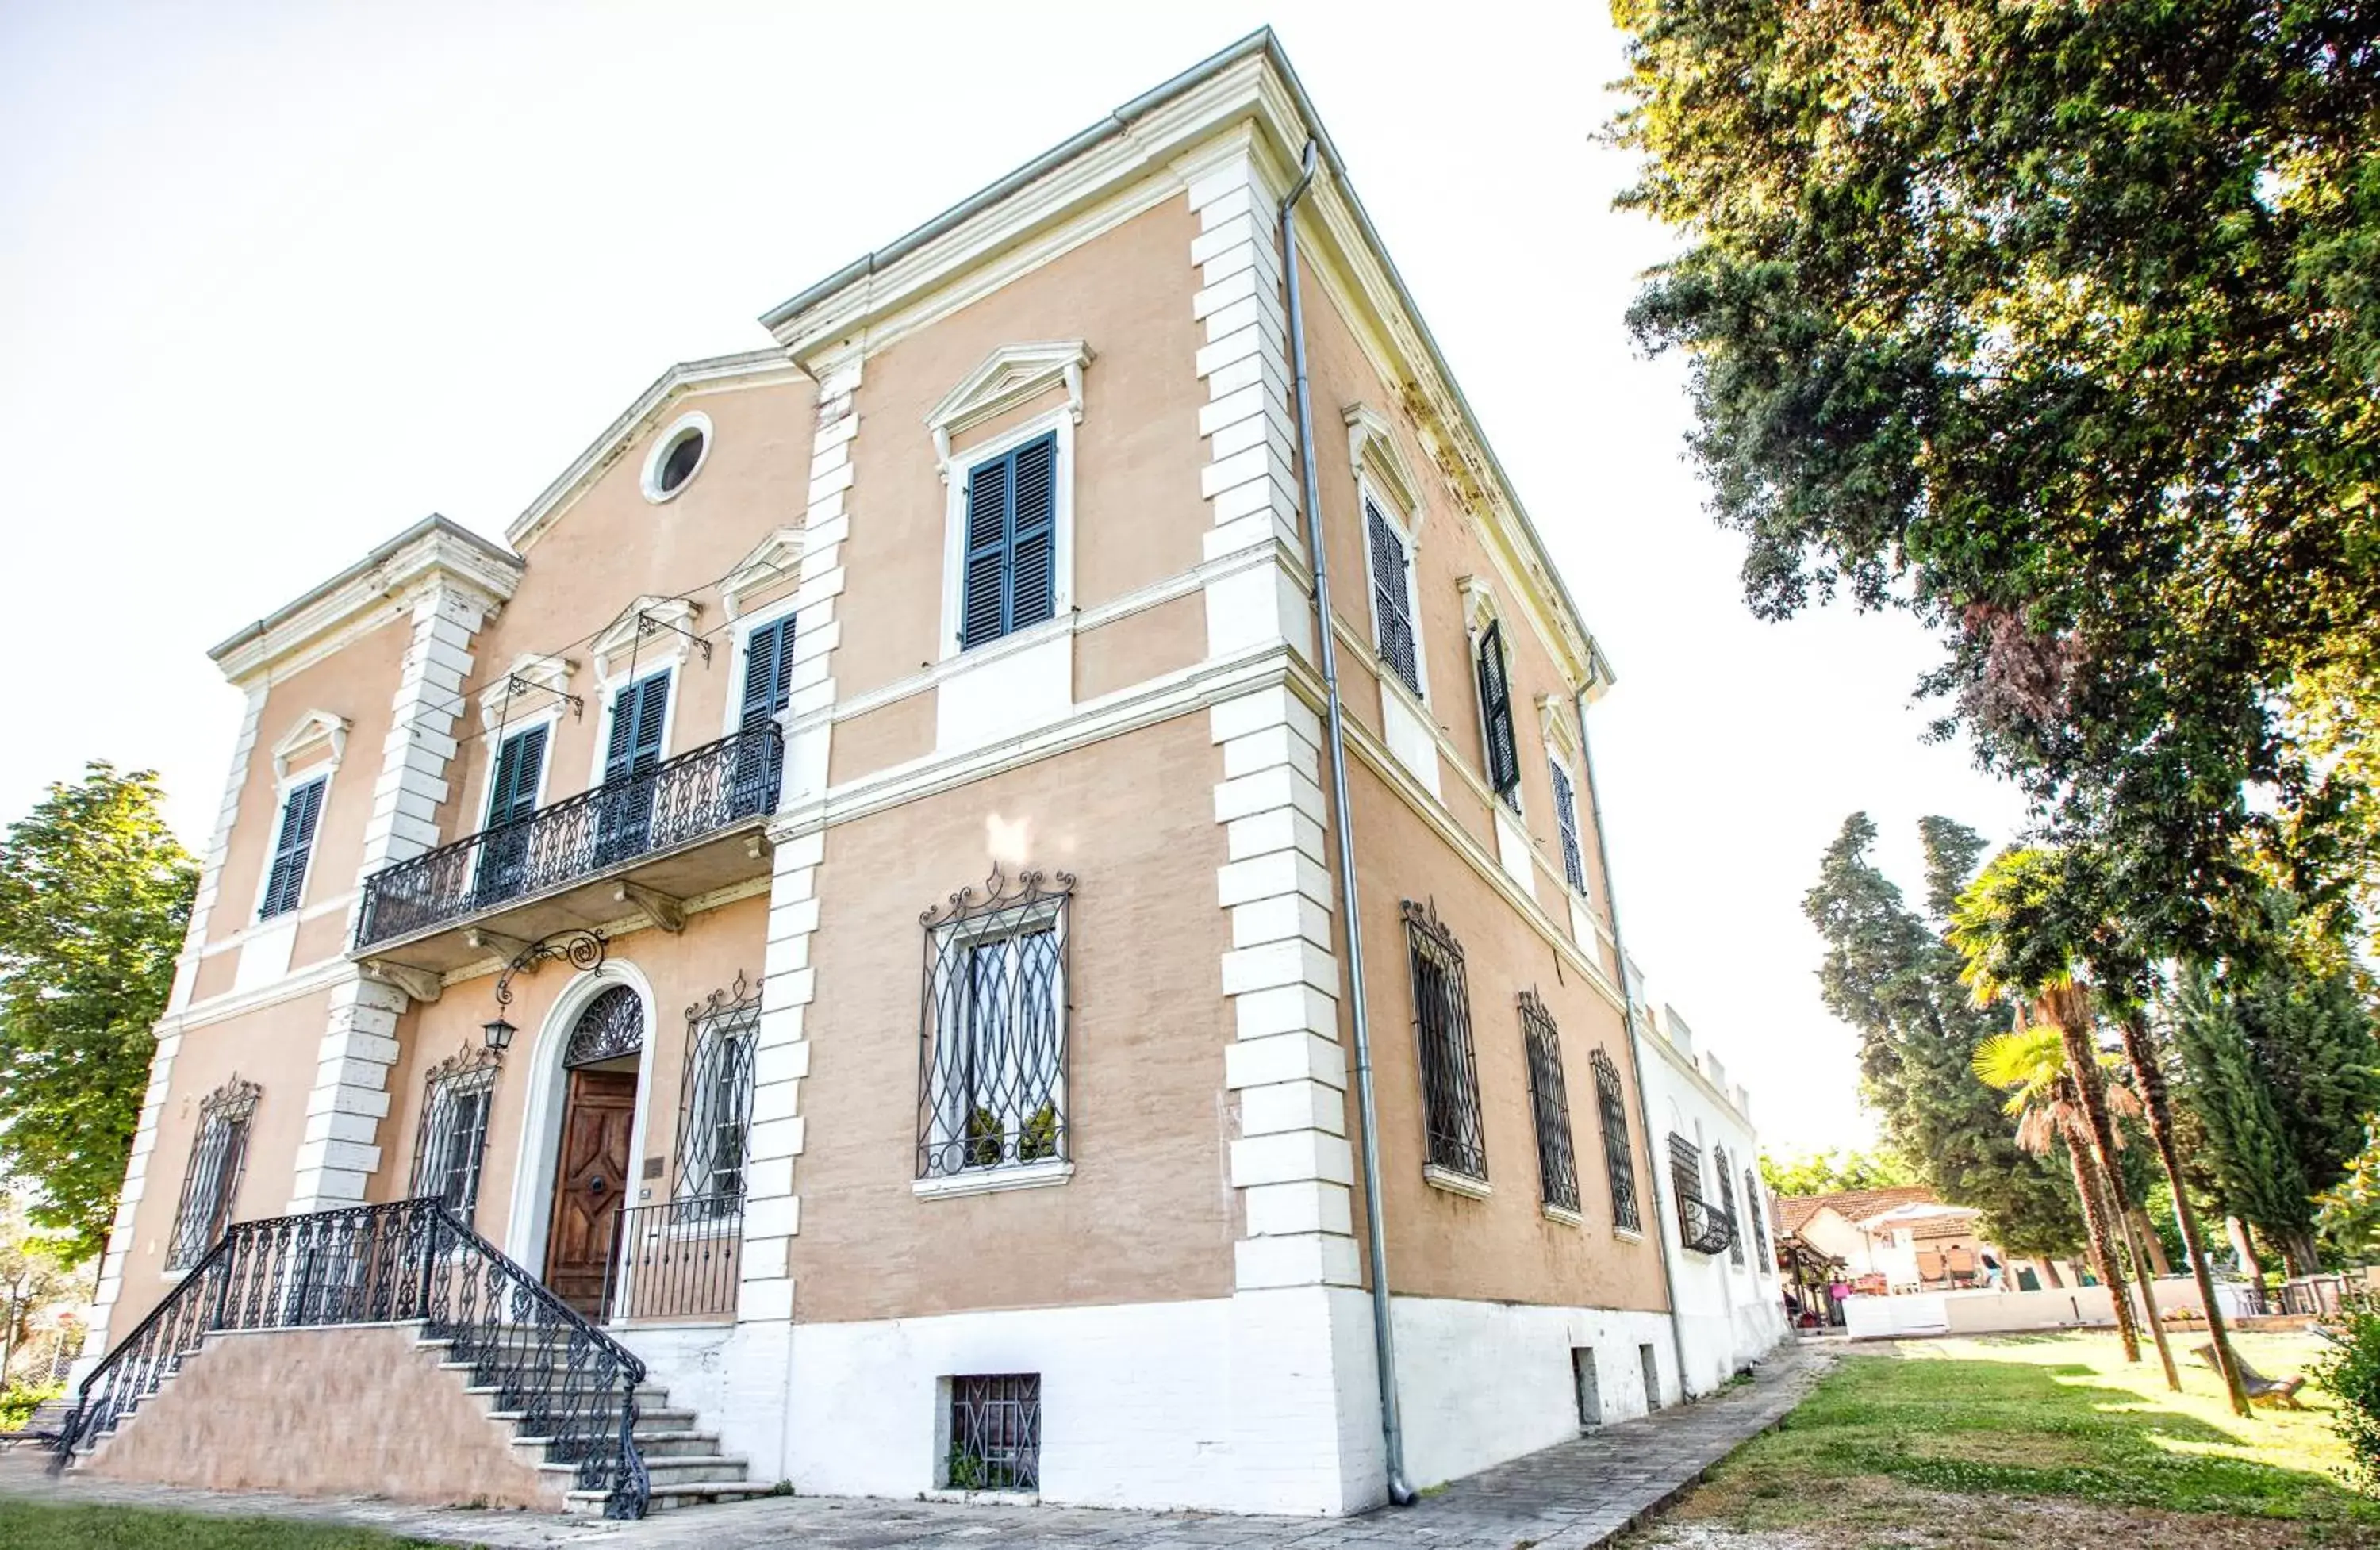 Property Building in Tenuta Villa Colle Sereno